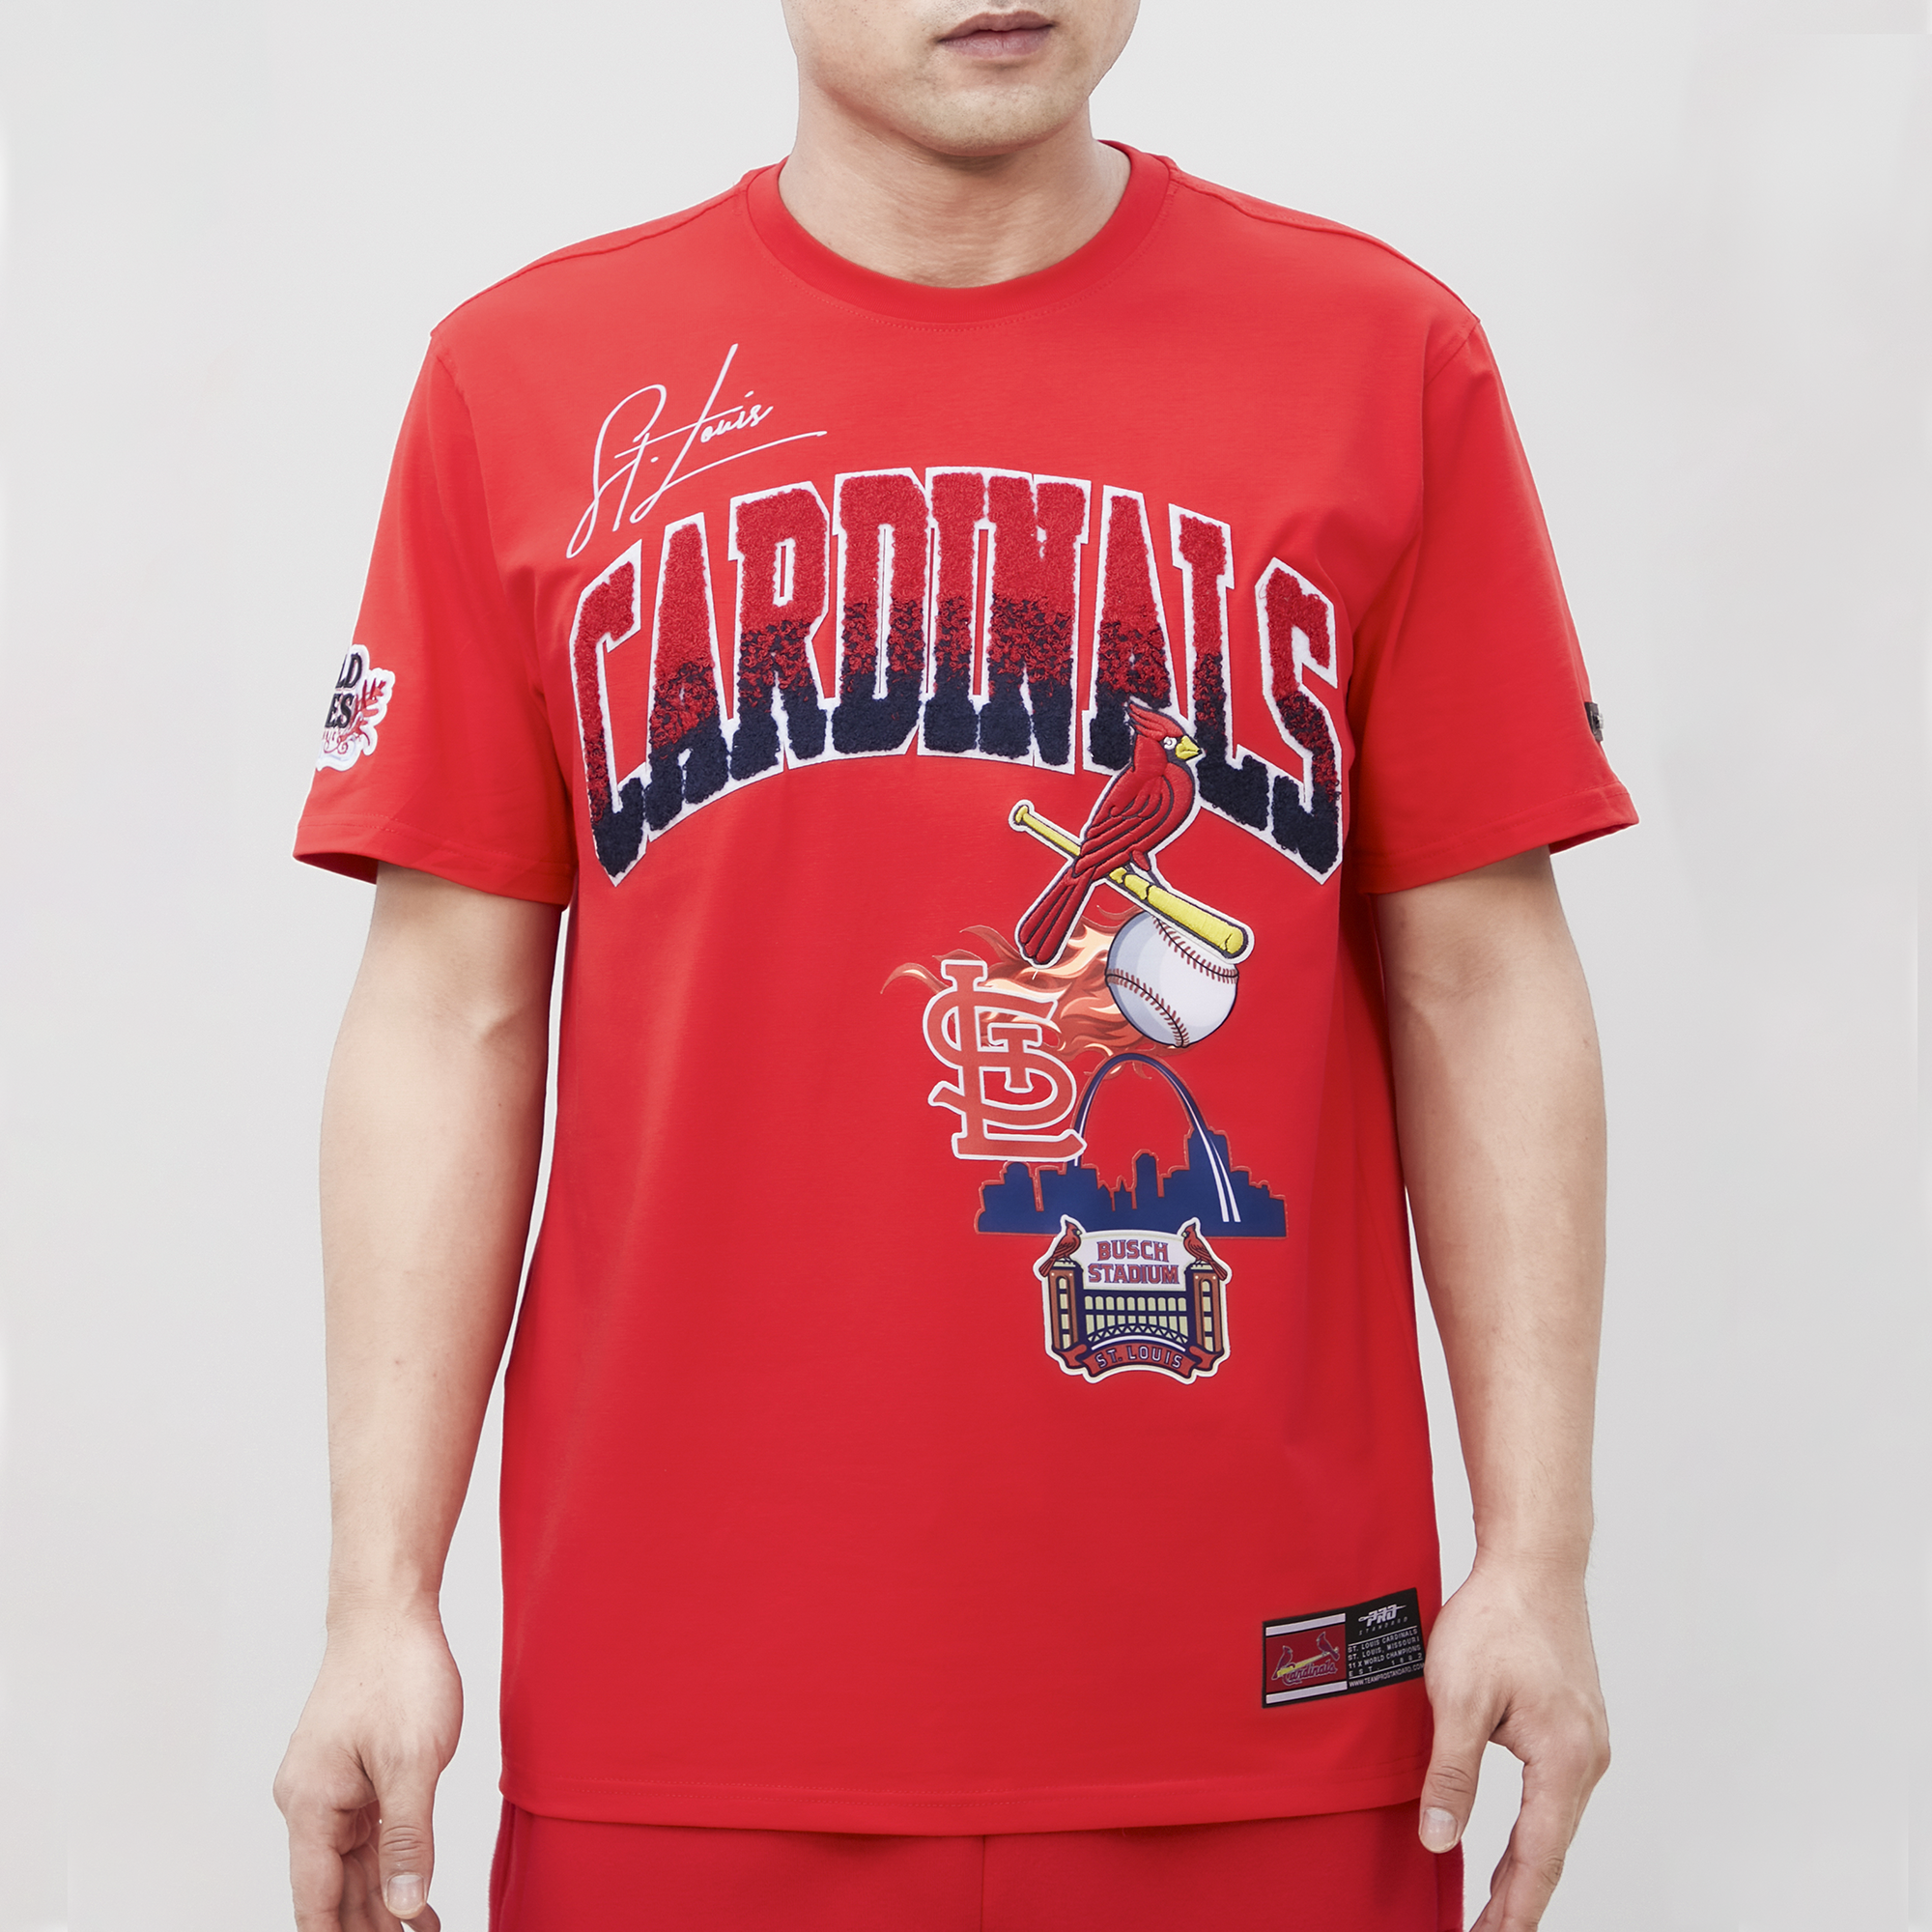 Pro Standard Cardinals Hometown T-Shirt - Men's